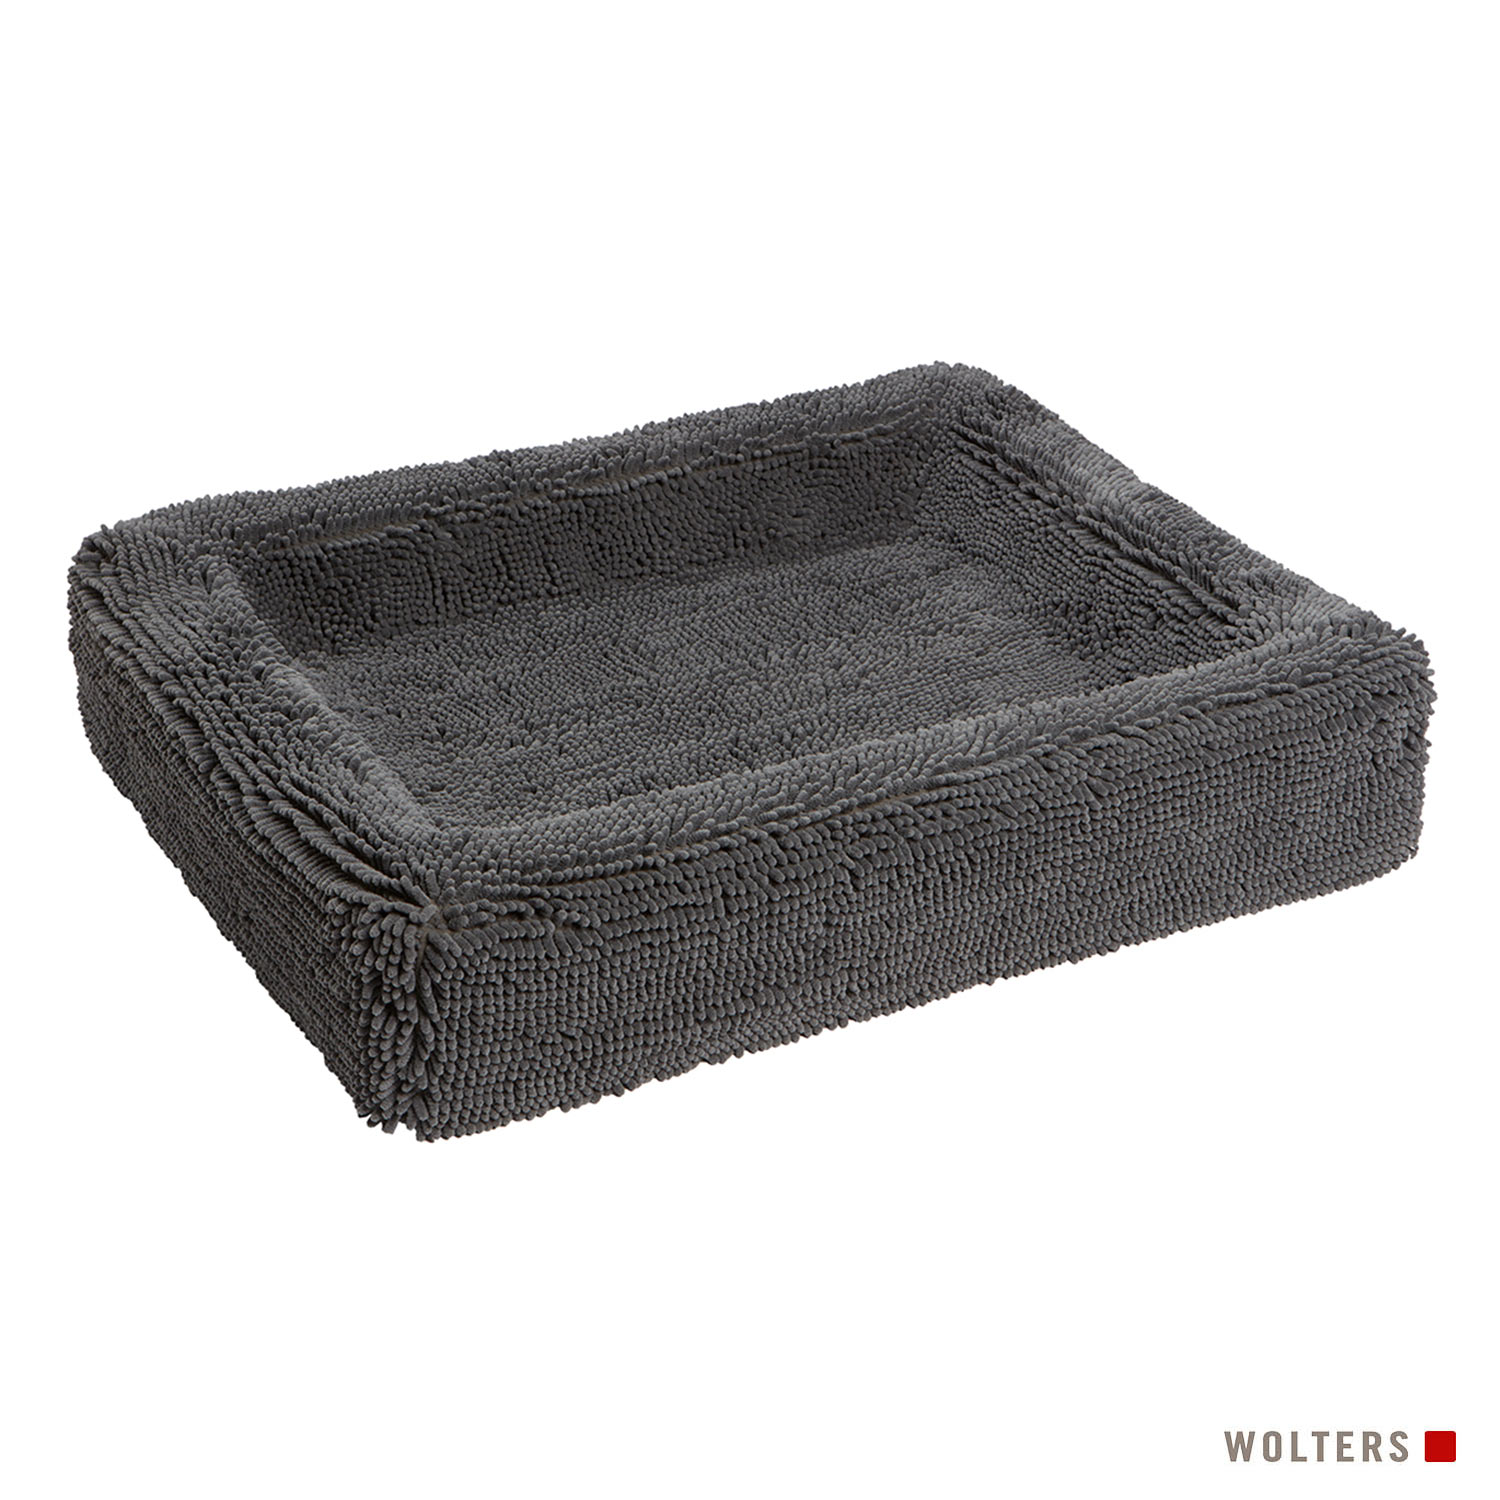 Wolters Hundebett Cleankeeper Komfortbett - cool grey